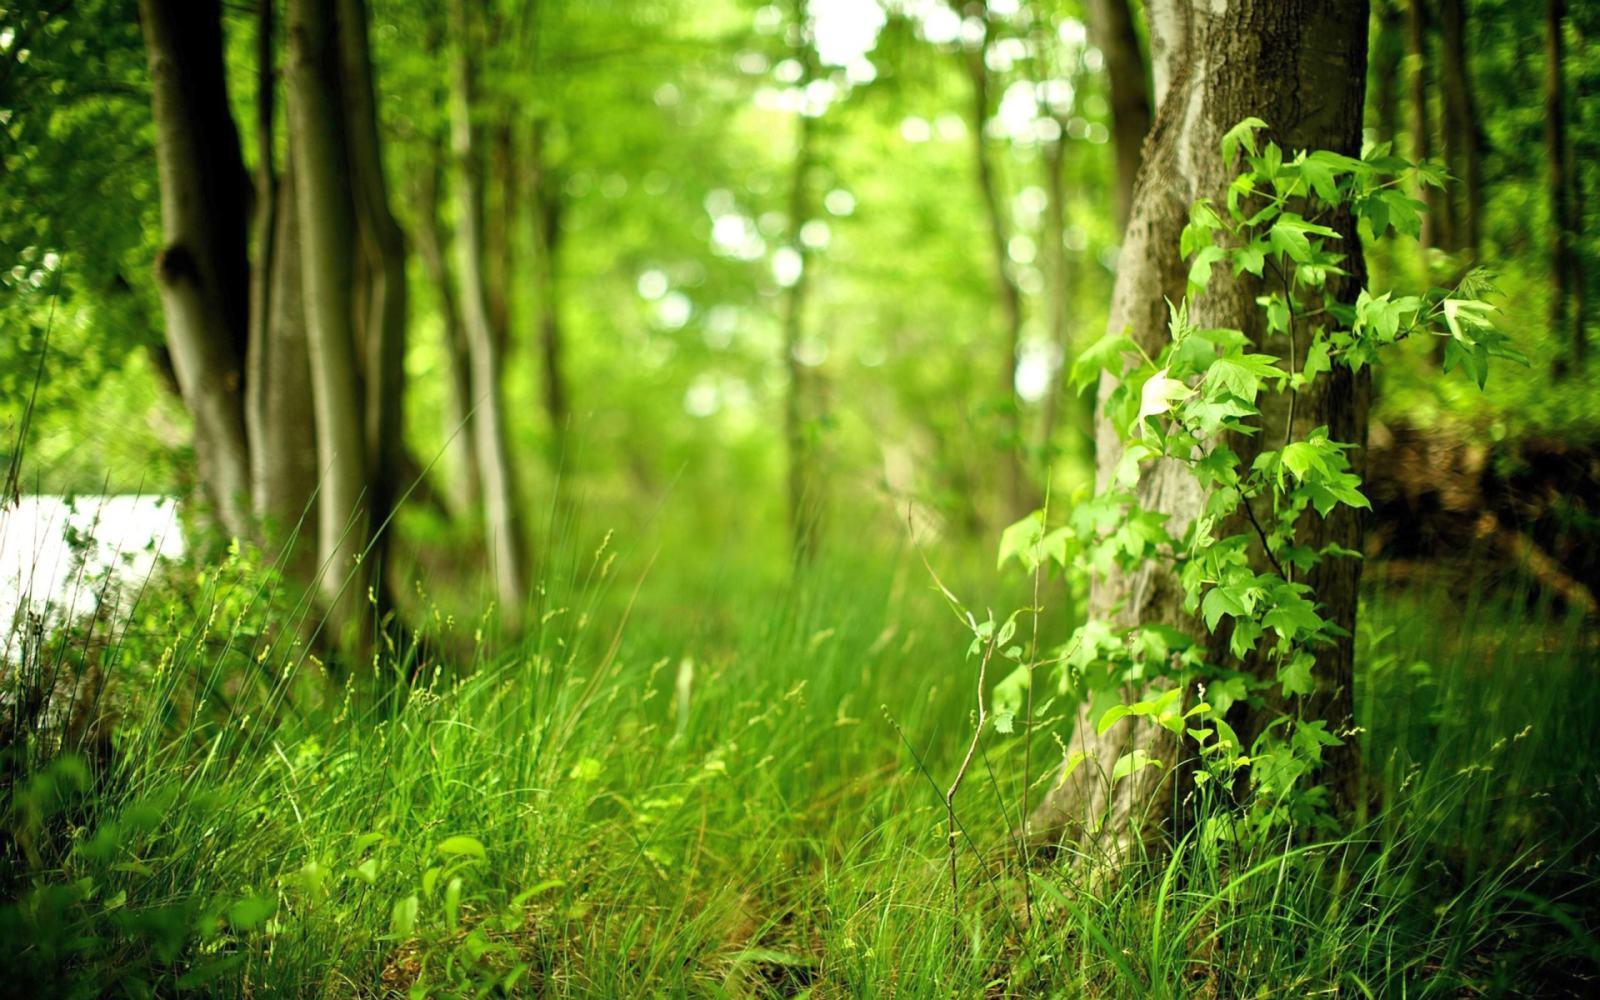 Hình nền rừng xanh: Bạn muốn tìm một hình nền đưa bạn đến với thiên nhiên hoang dã? Hãy tận hưởng không gian rừng xanh đầy bí ẩn và sống động bằng hình nền rừng xanh. Sự kết hợp giữa màu xanh và các nhánh cây sẽ đưa bạn vào một thế giới đầy màu sắc.